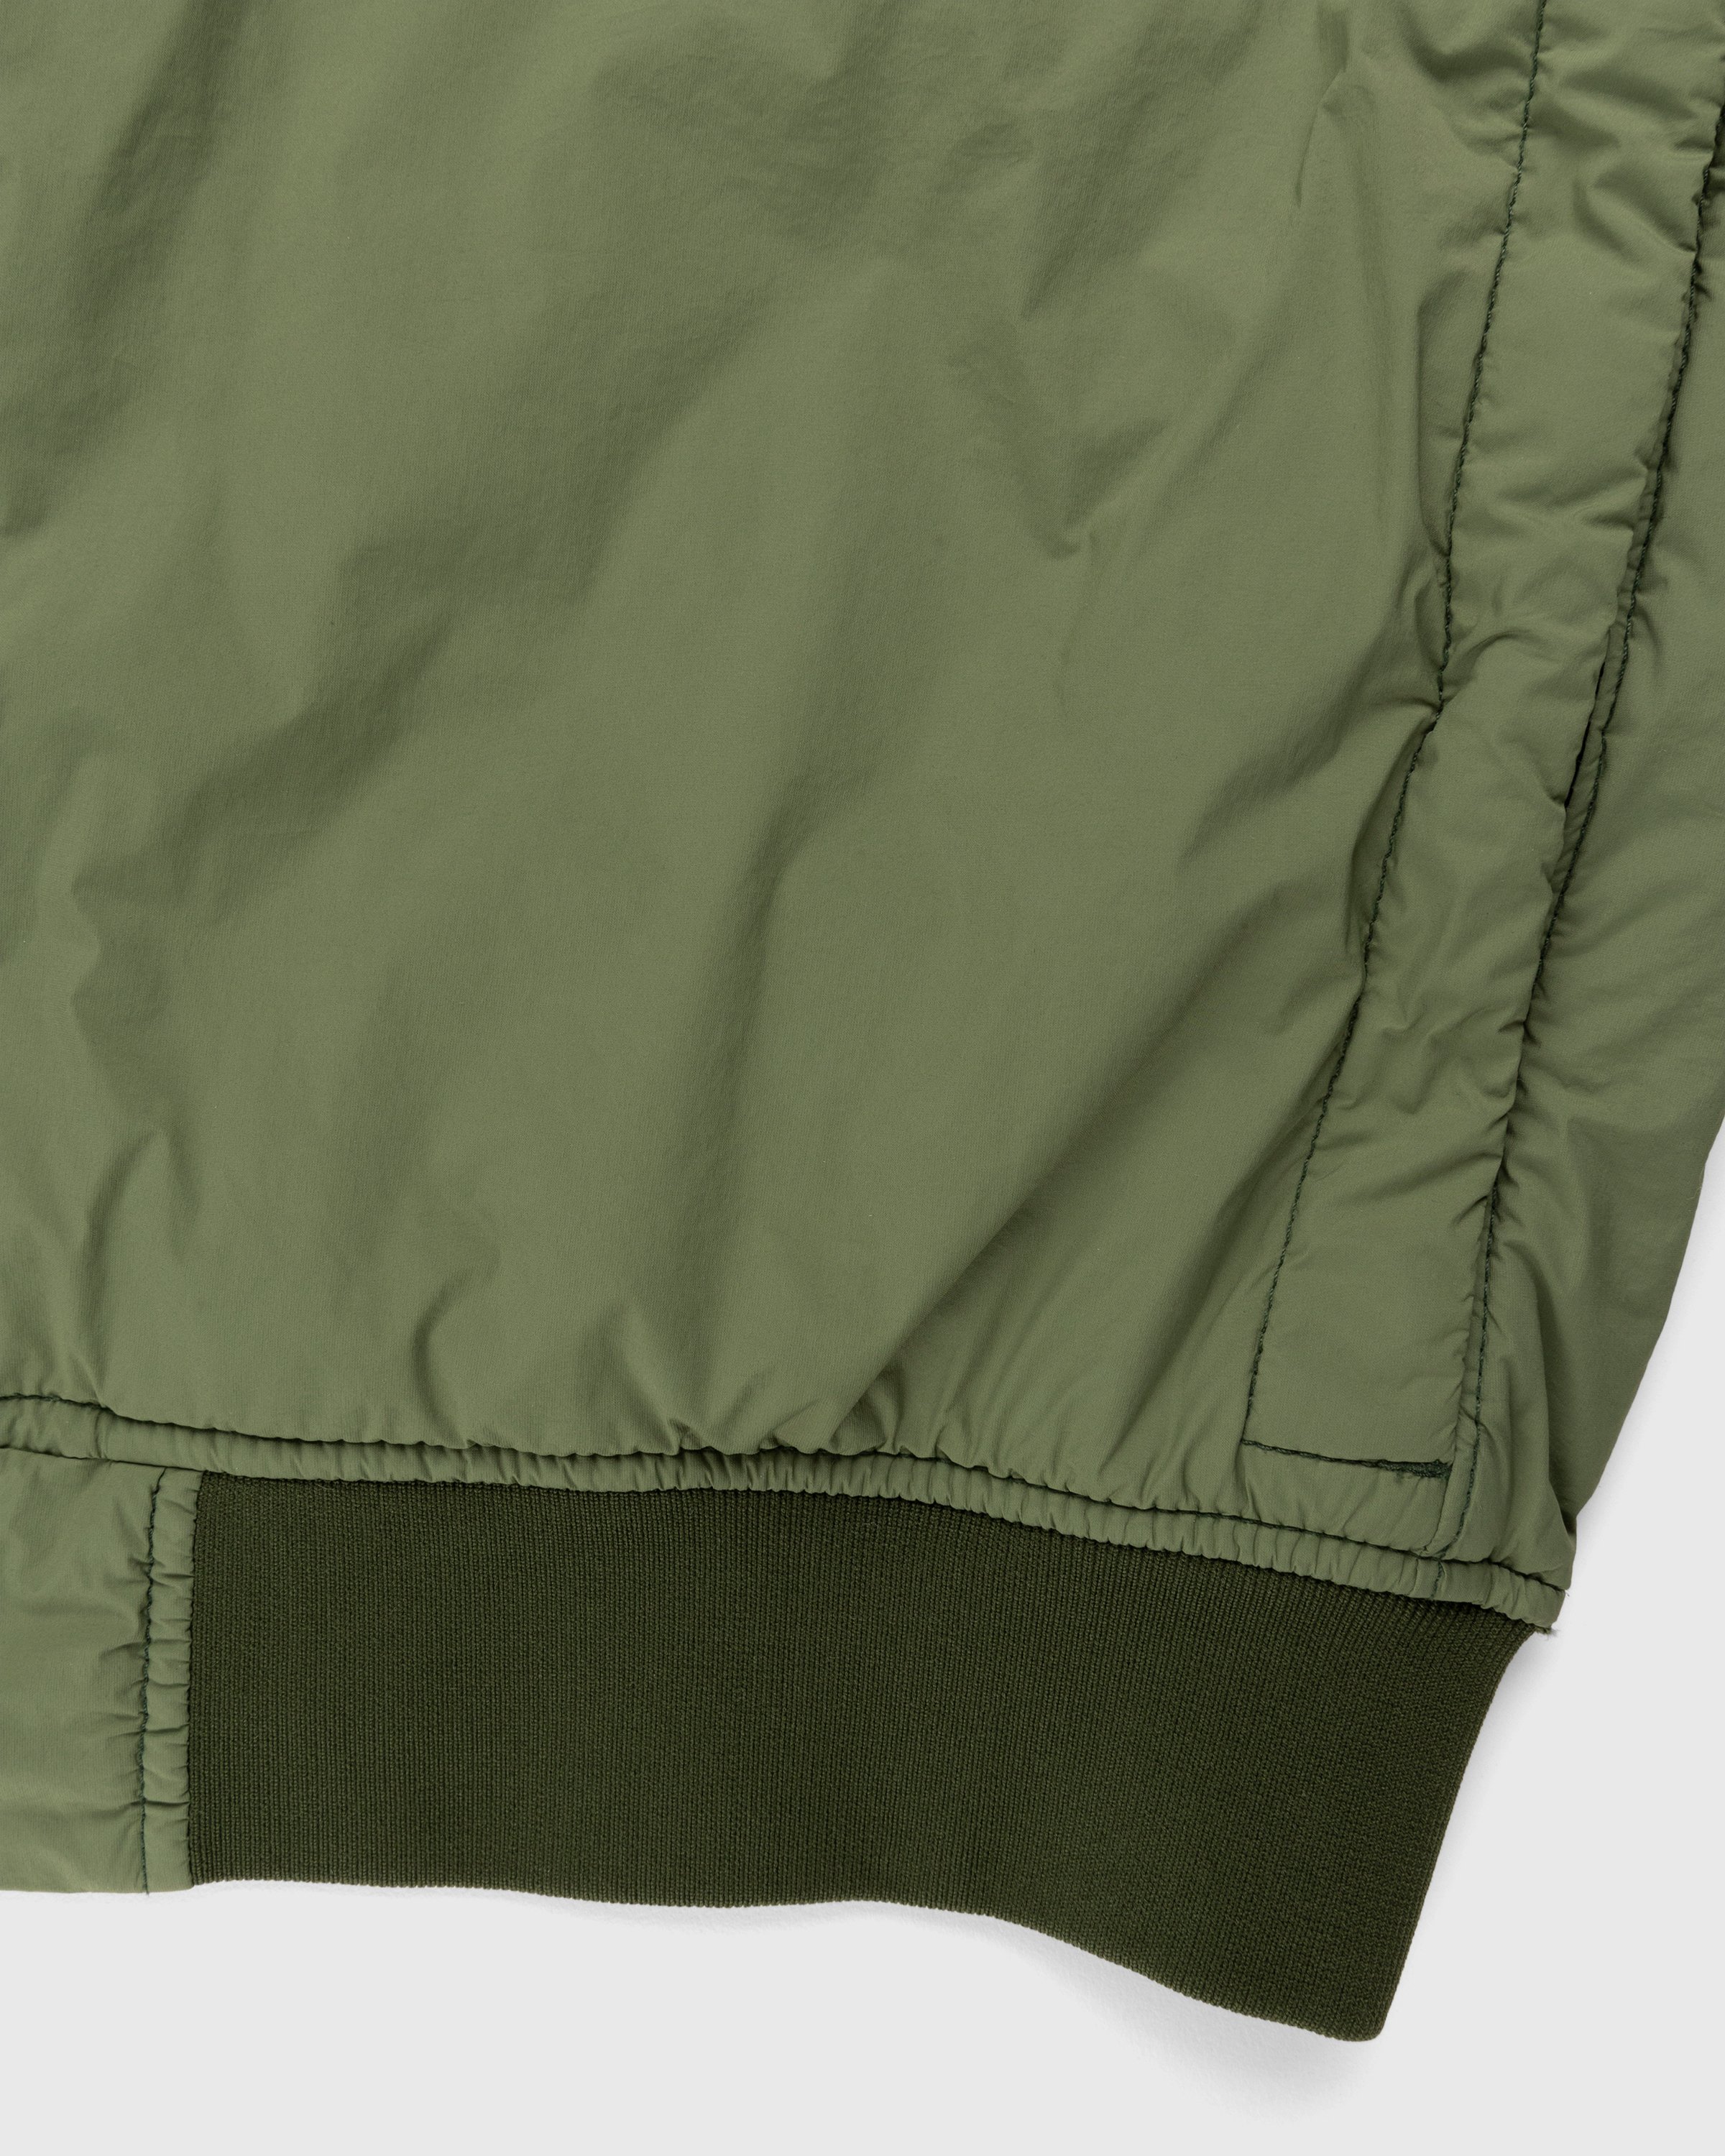 Stone Island - 41331 Nylon Bomber Jacket Olive - Clothing - Green - Image 4